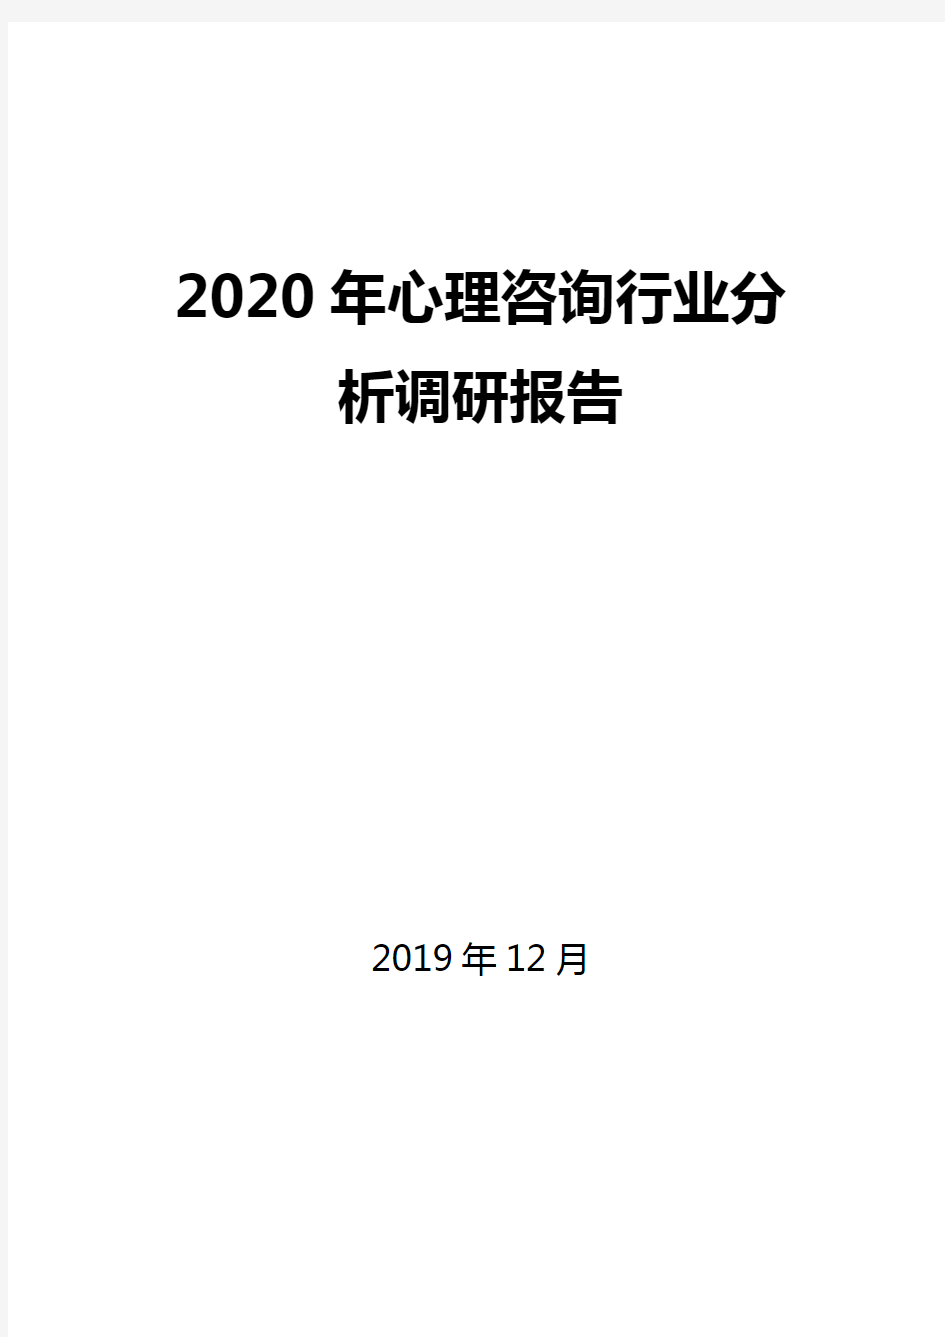 2020年心理咨询行业分析调研报告